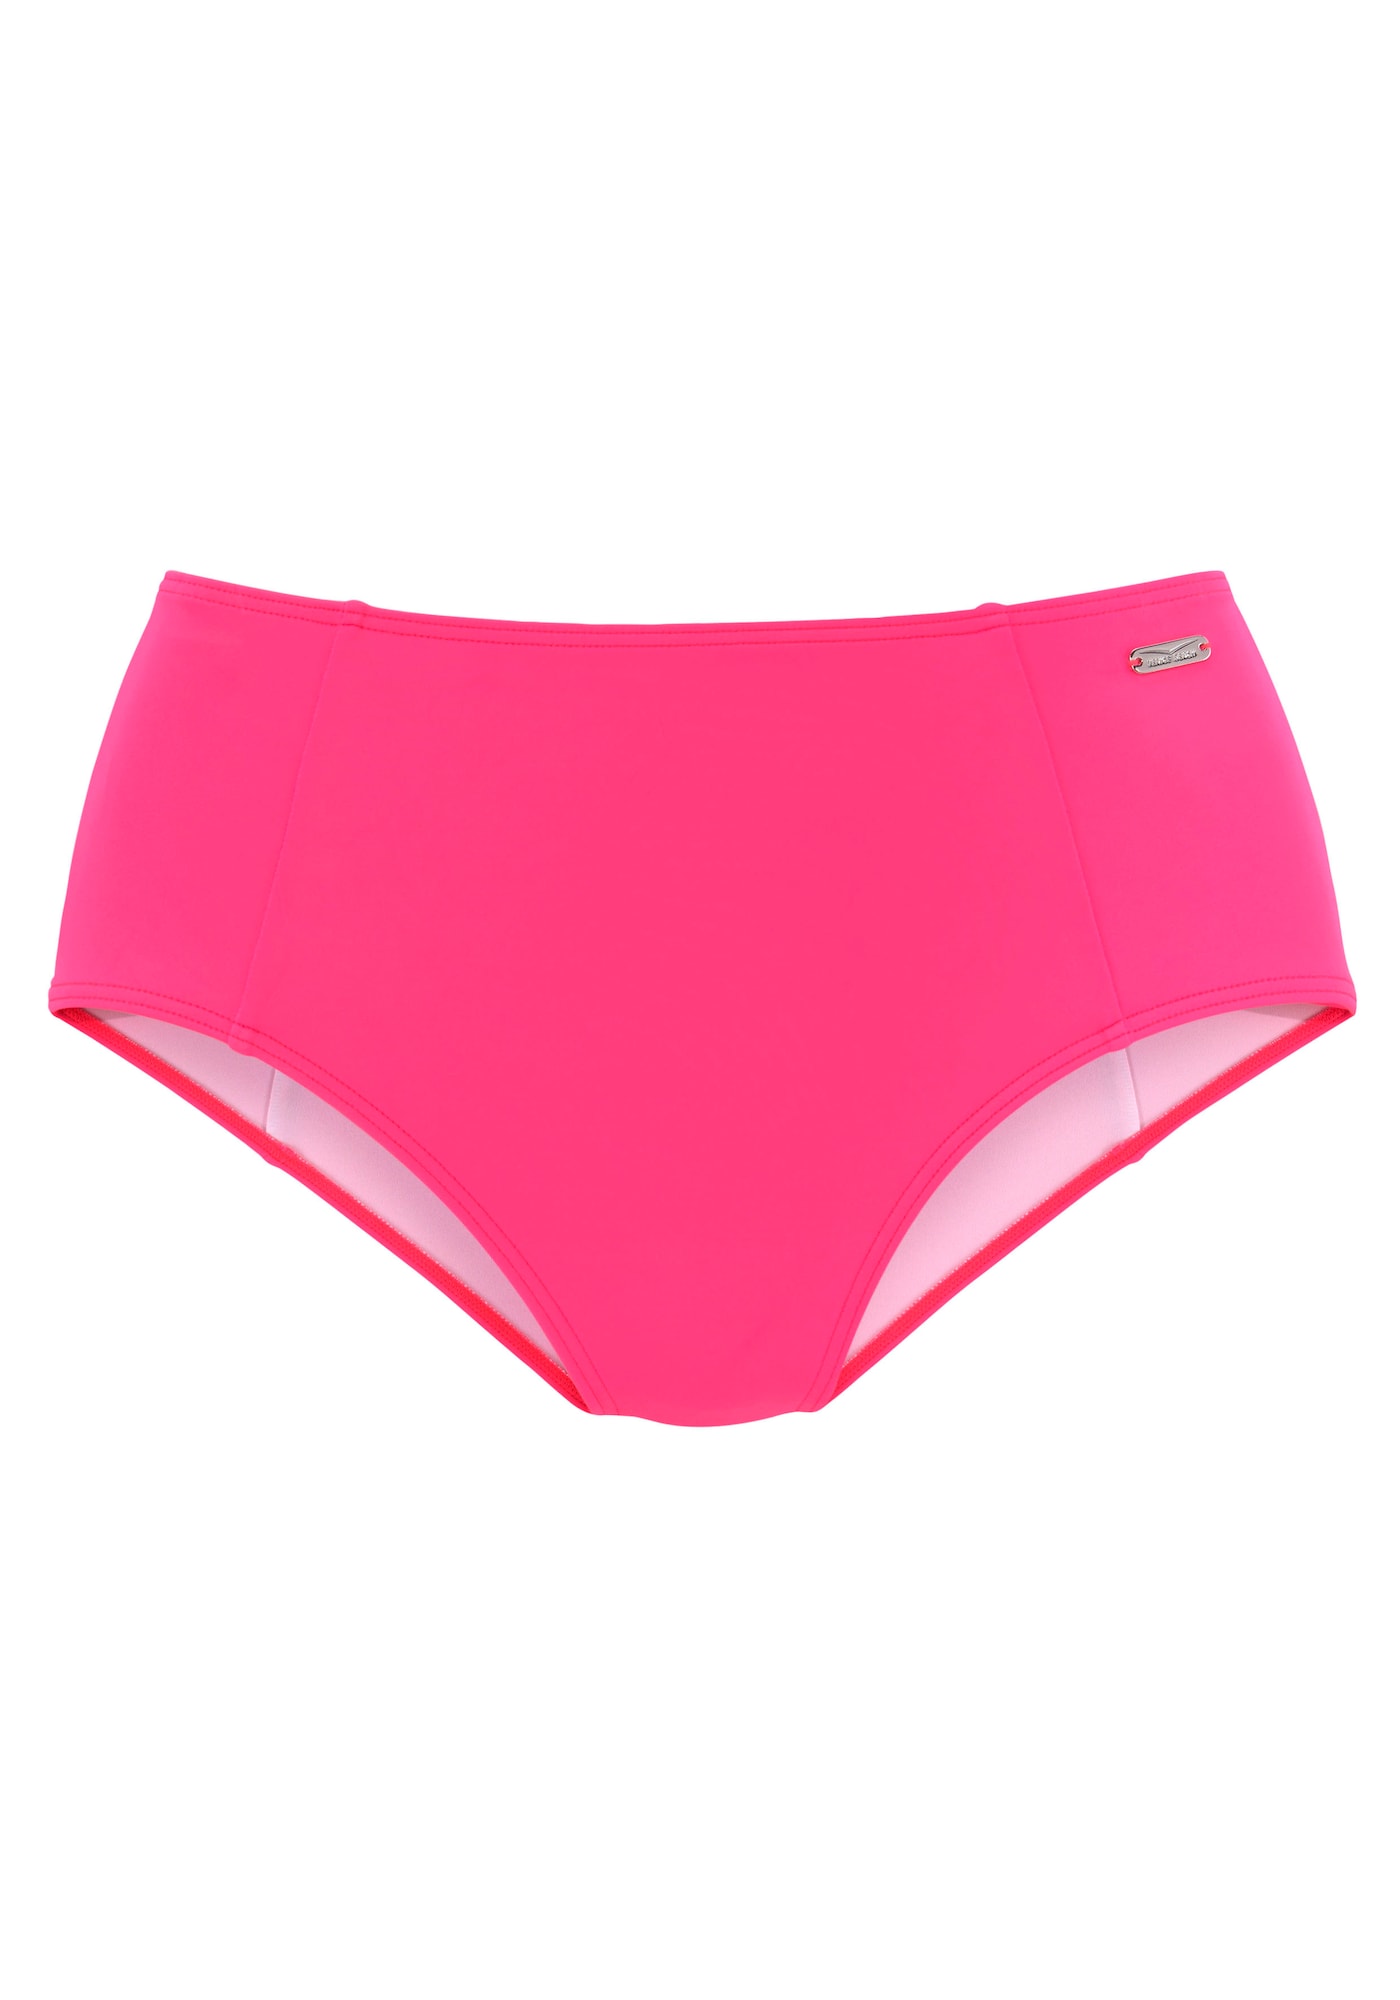 VENICE BEACH Športne bikini hlačke  neonsko roza